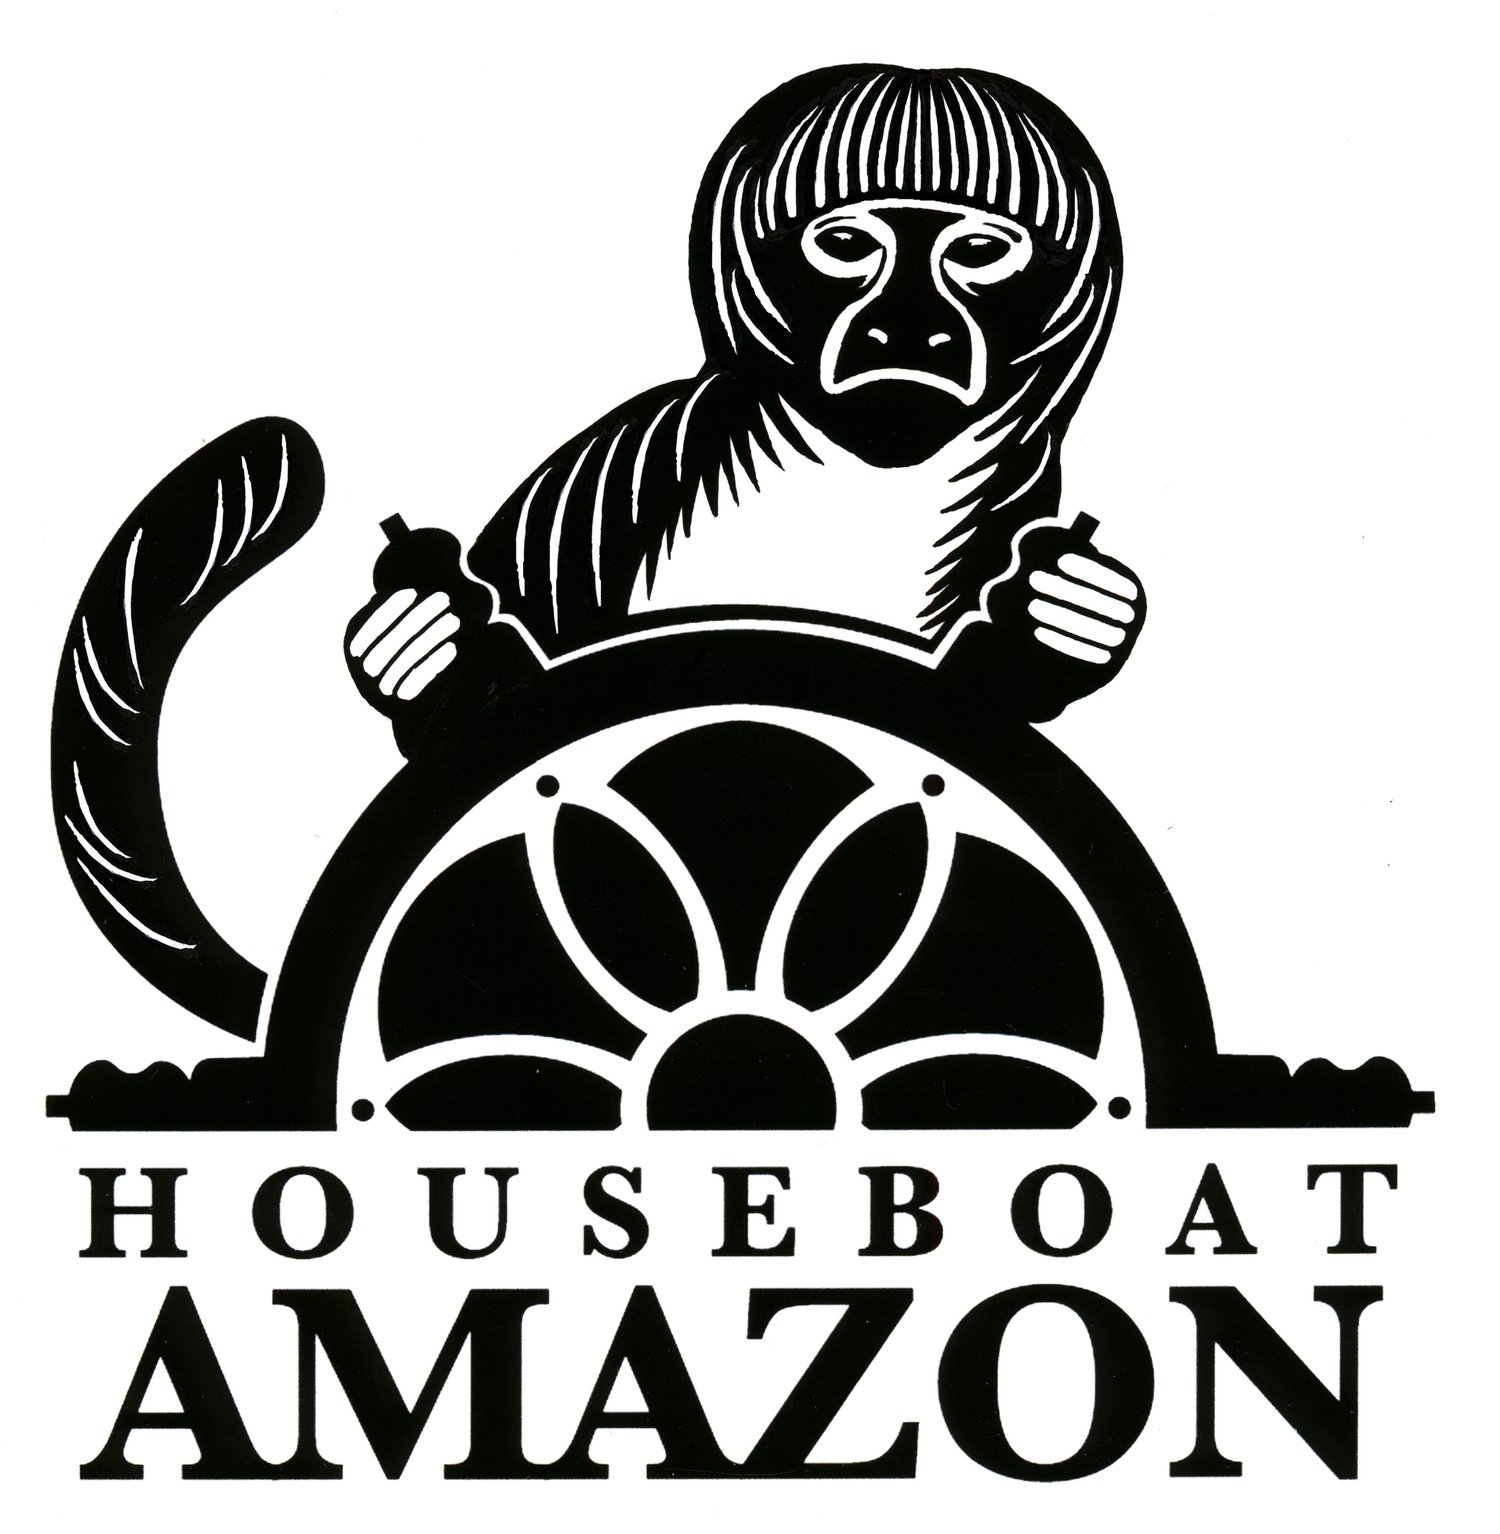 Houseboat Amazon